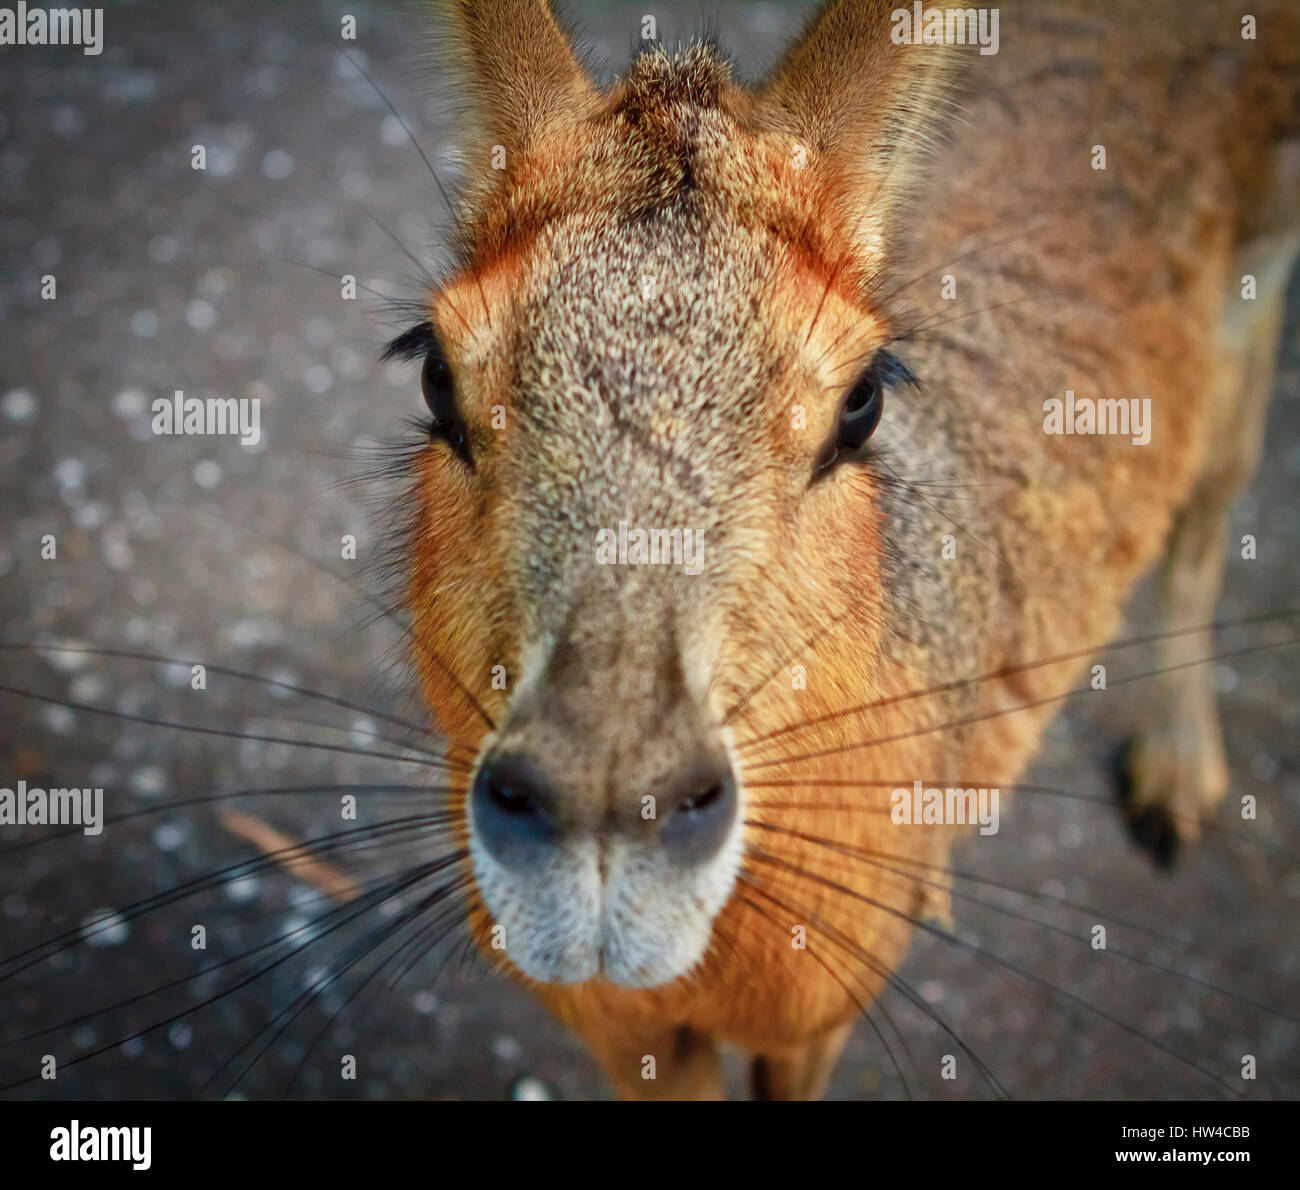 Close up of nose of capybara Stock Photo